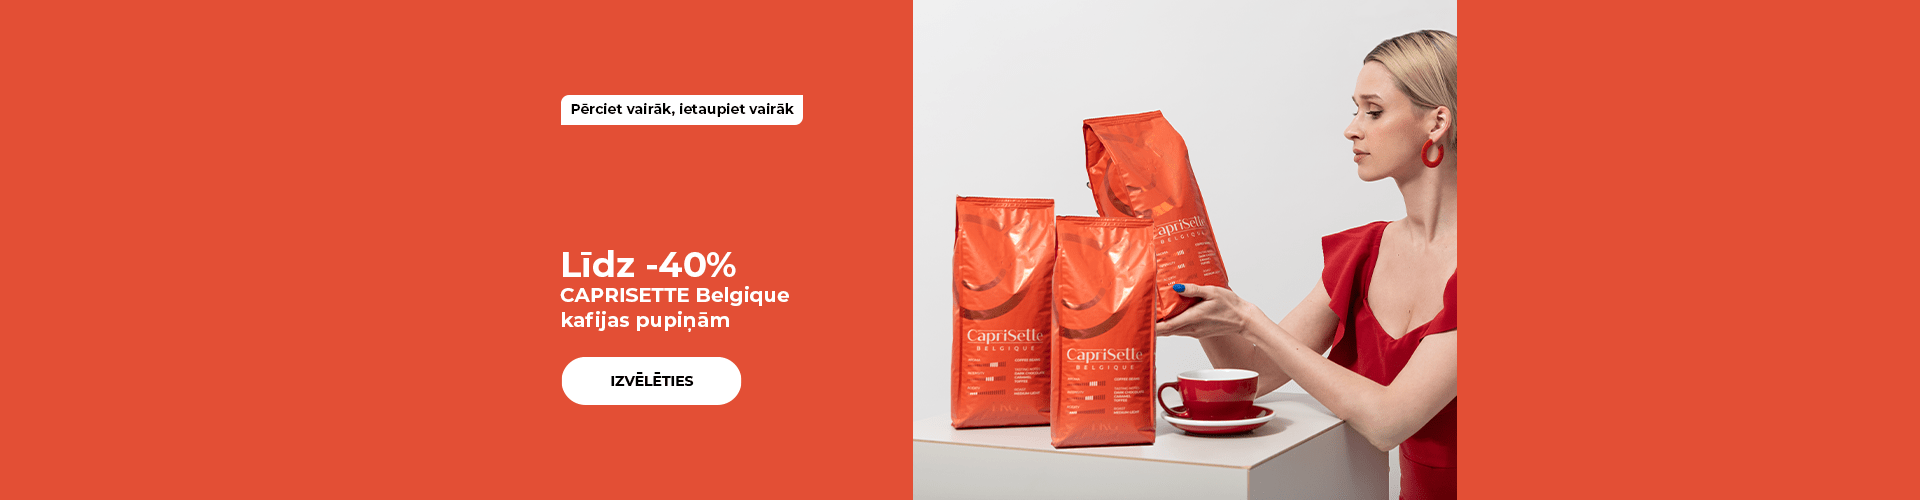 Līdz -40% CAPRISETTE Belgique kafijas pupiņām